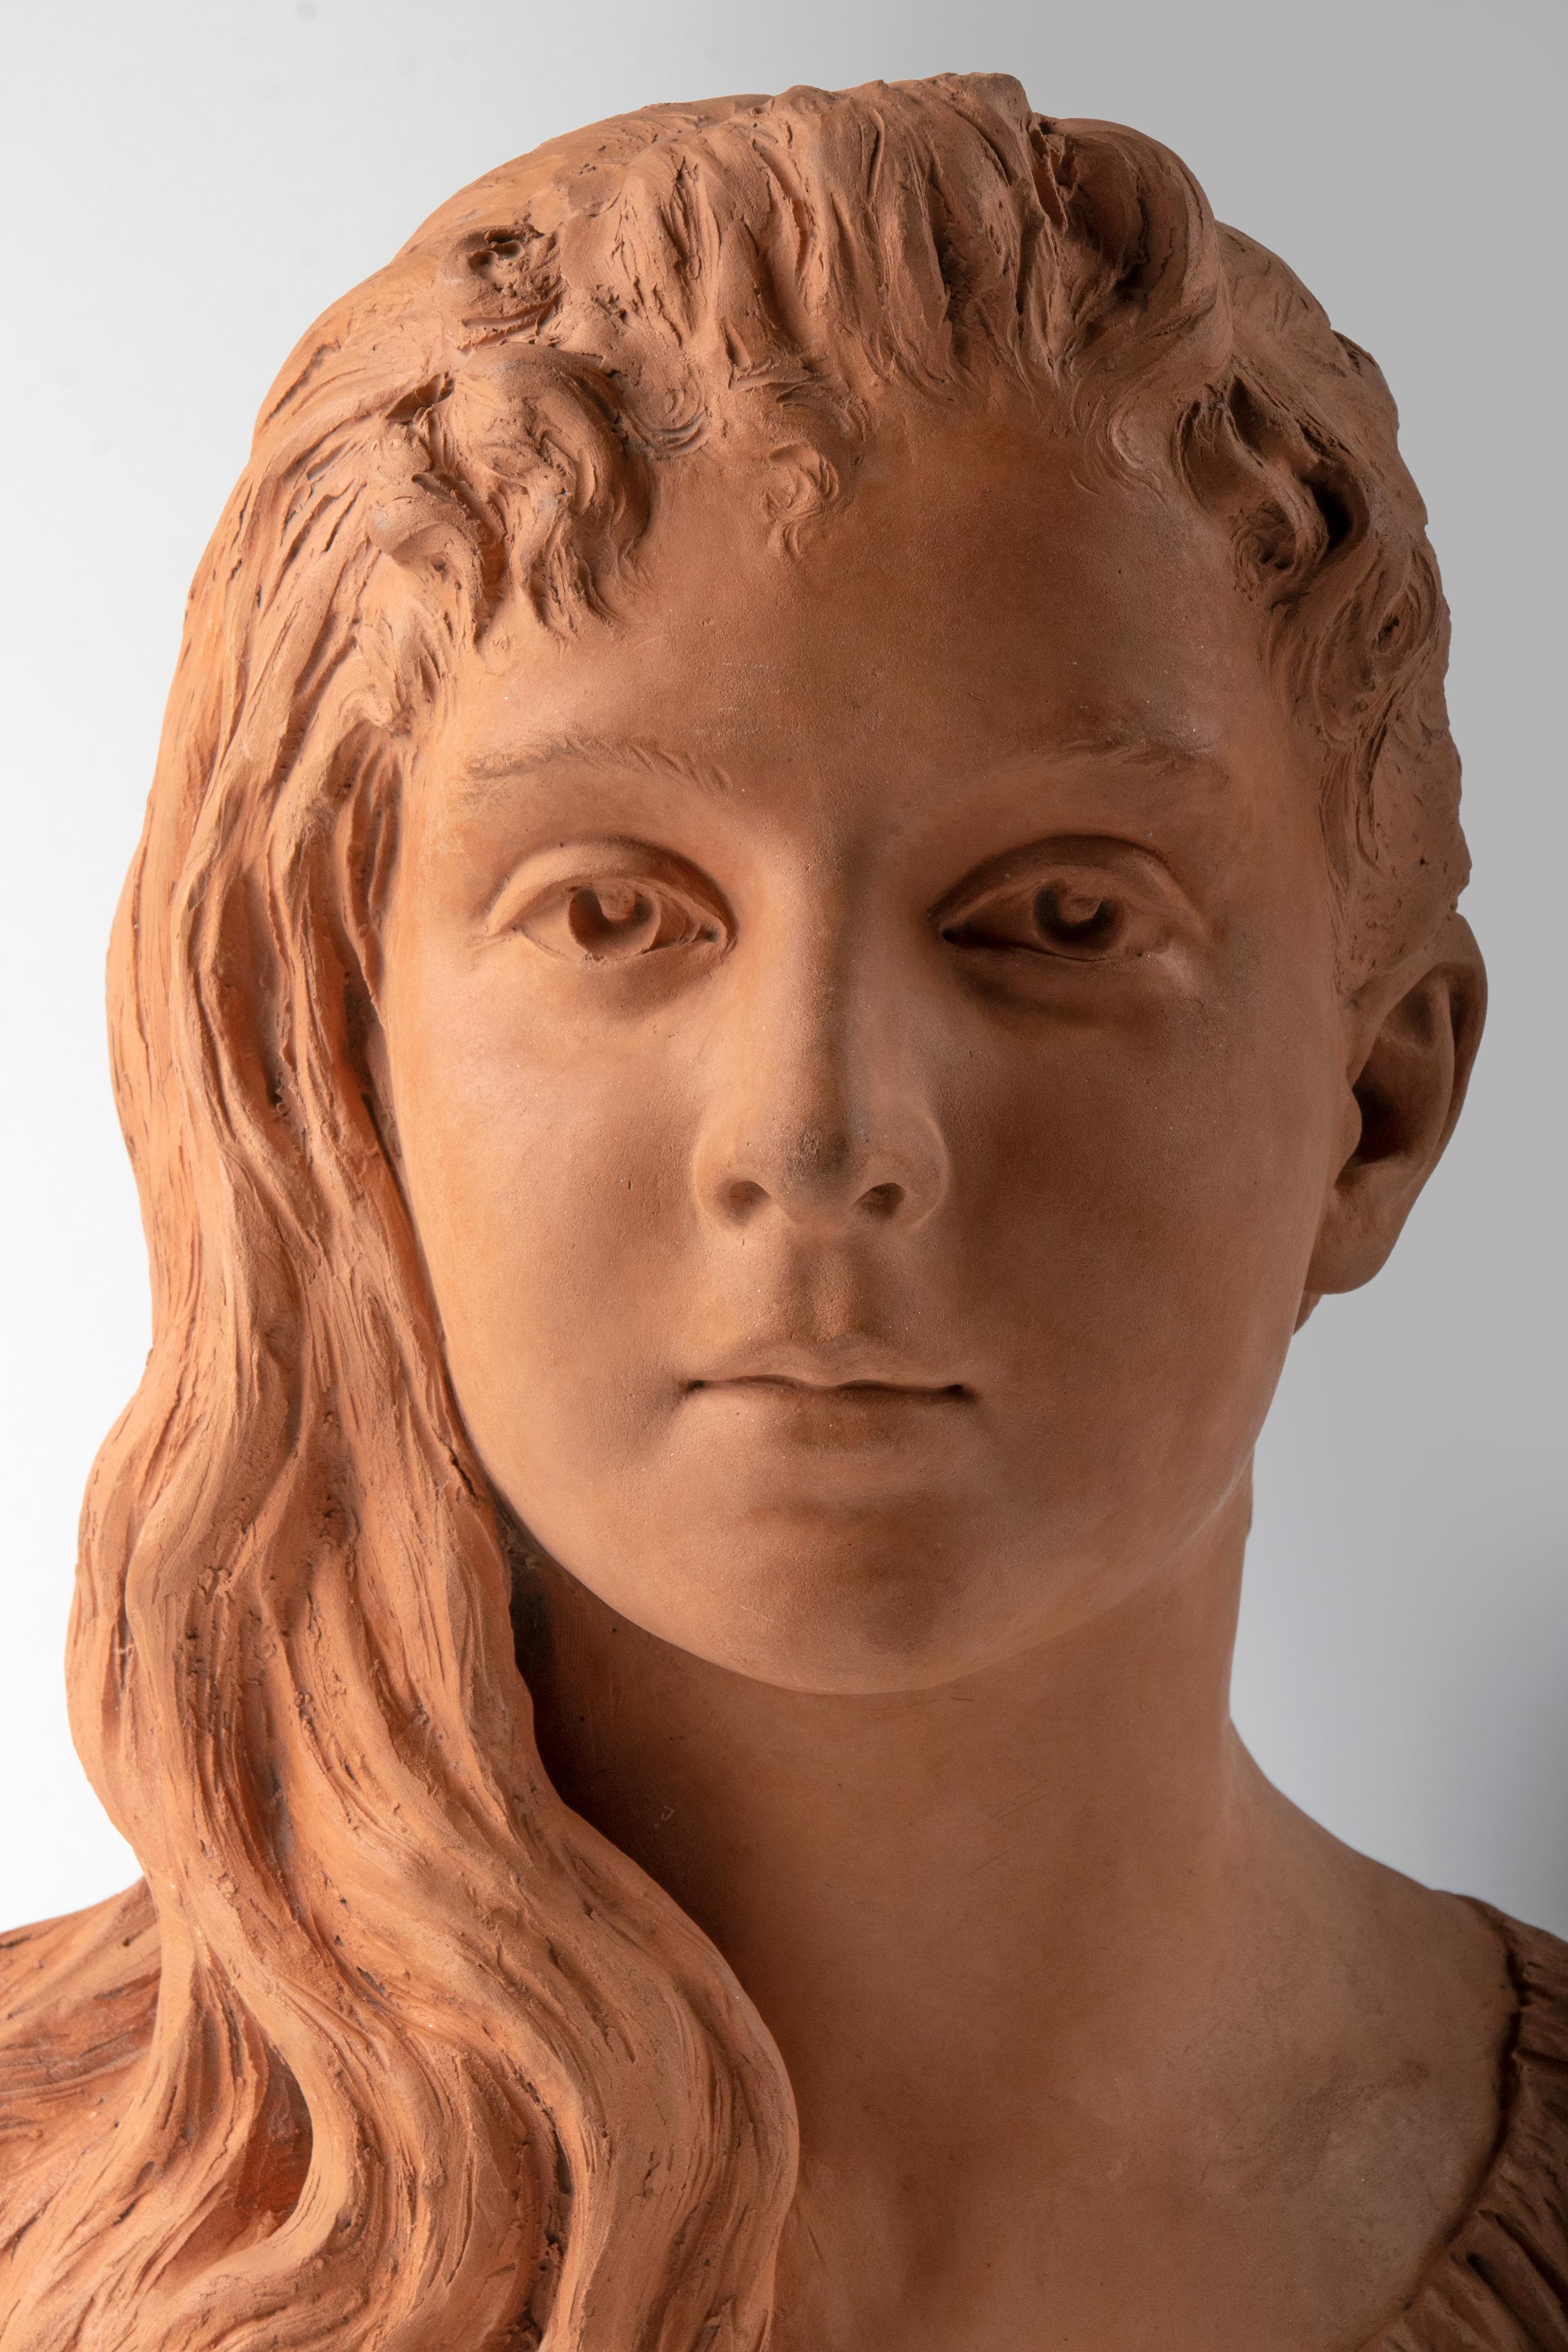 
Buste en terre cuite de la fin du 19e siècle représentant une jeune fille nommée Graziella. Elle a une expression douce sur le visage. Sculpture joliment détaillée. Signé sur le côté 